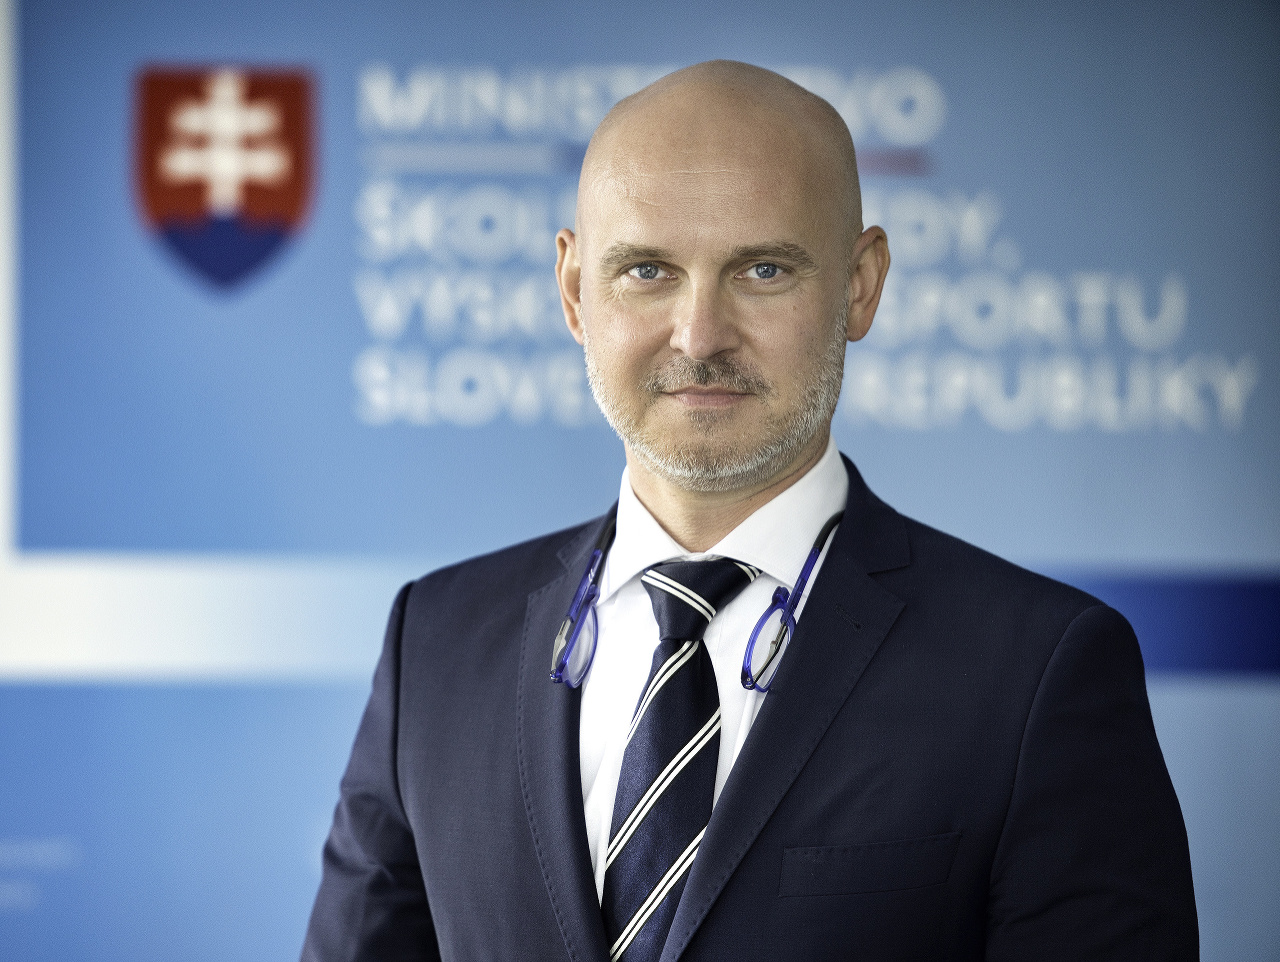 Minister školstva, vedy, výskumu a športu SR Branislav Gröhling